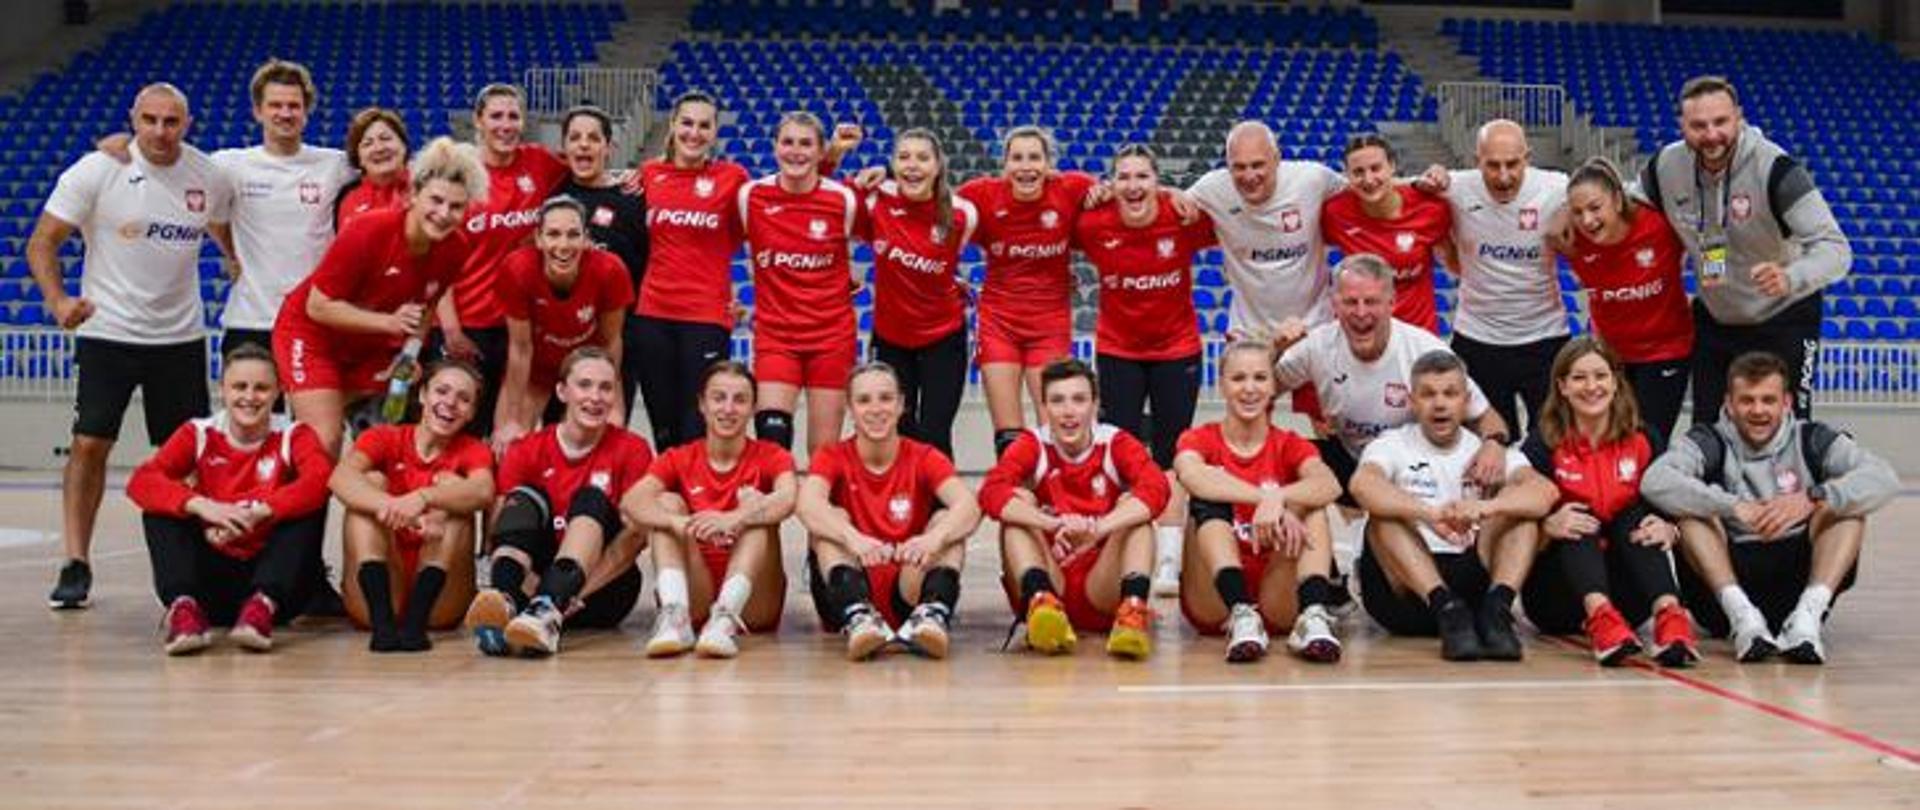 Reprezentacja Polski kobiet w kategorii Piłka ręczna 